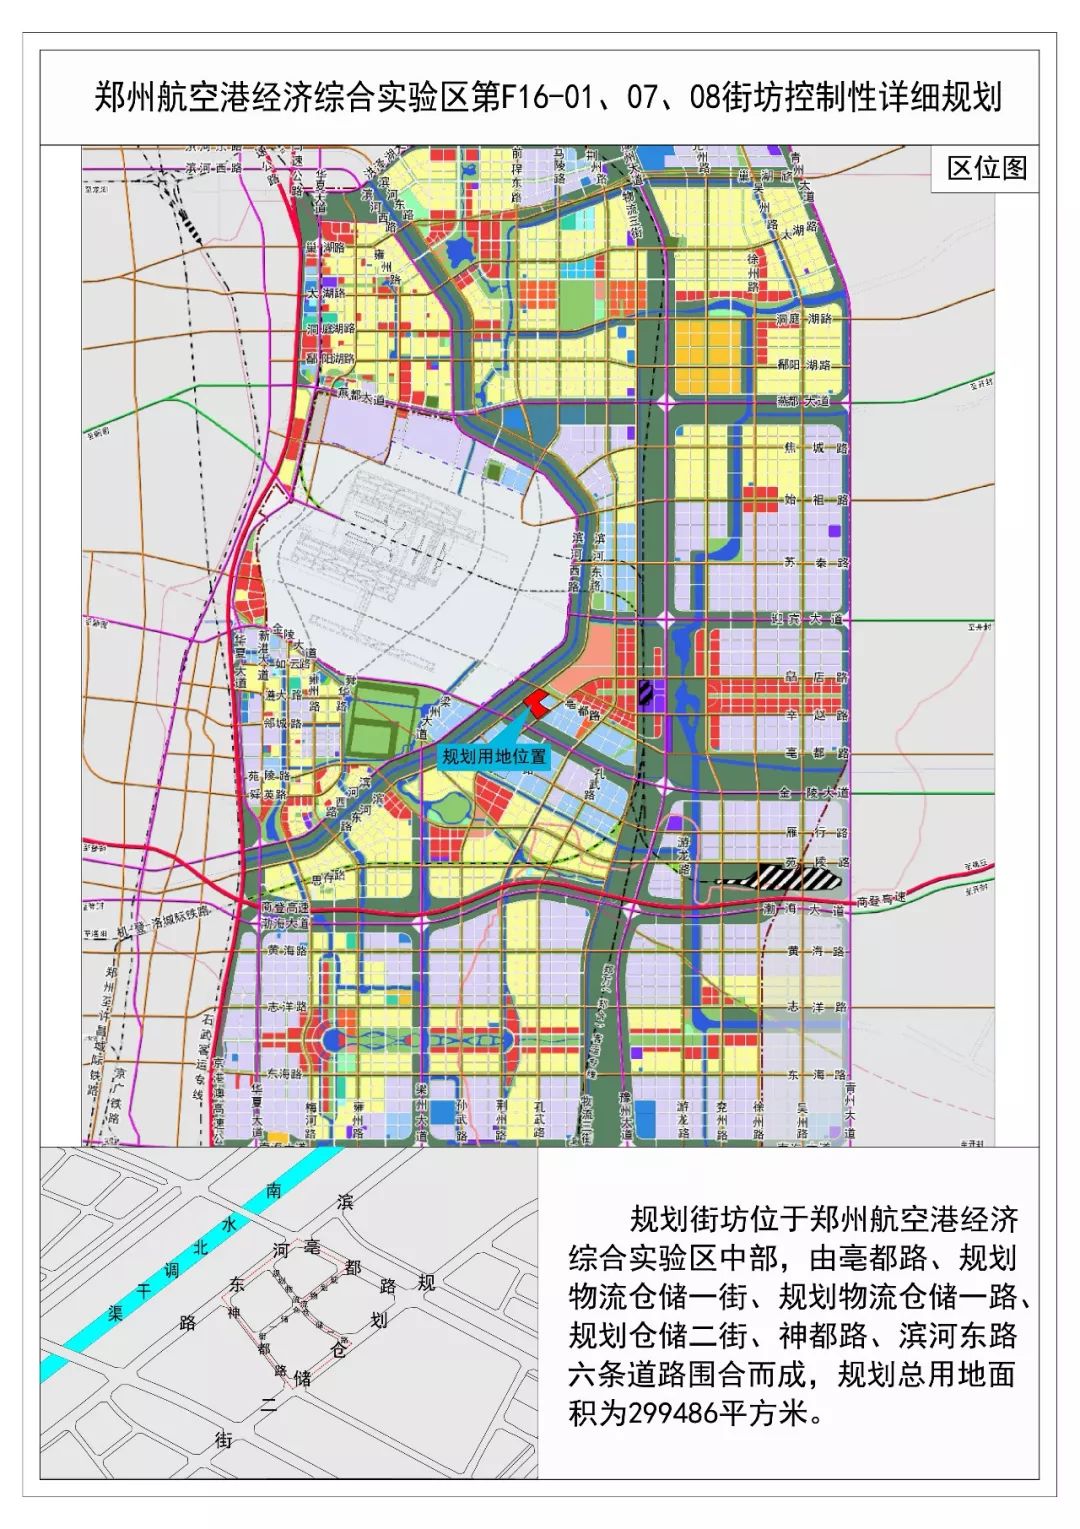 7个片区5036亩郑州航空港区北中南部均出新规划